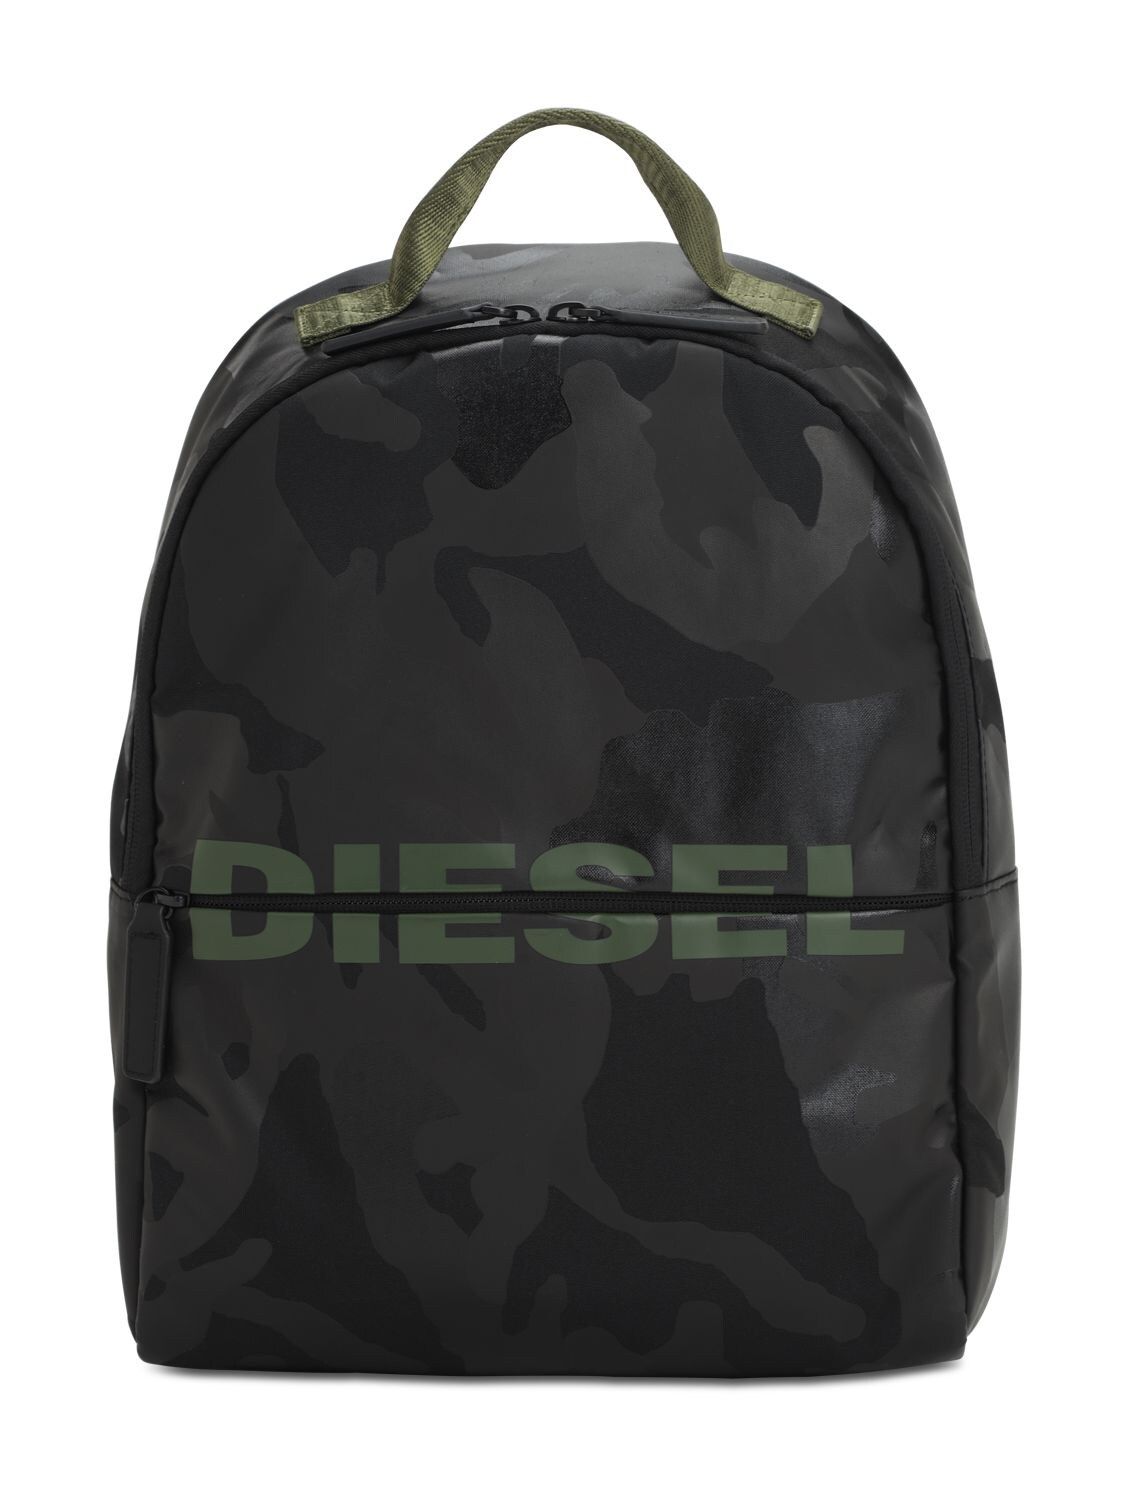 Diesel Kids' Camouflage Print Nylon Backpack In Black